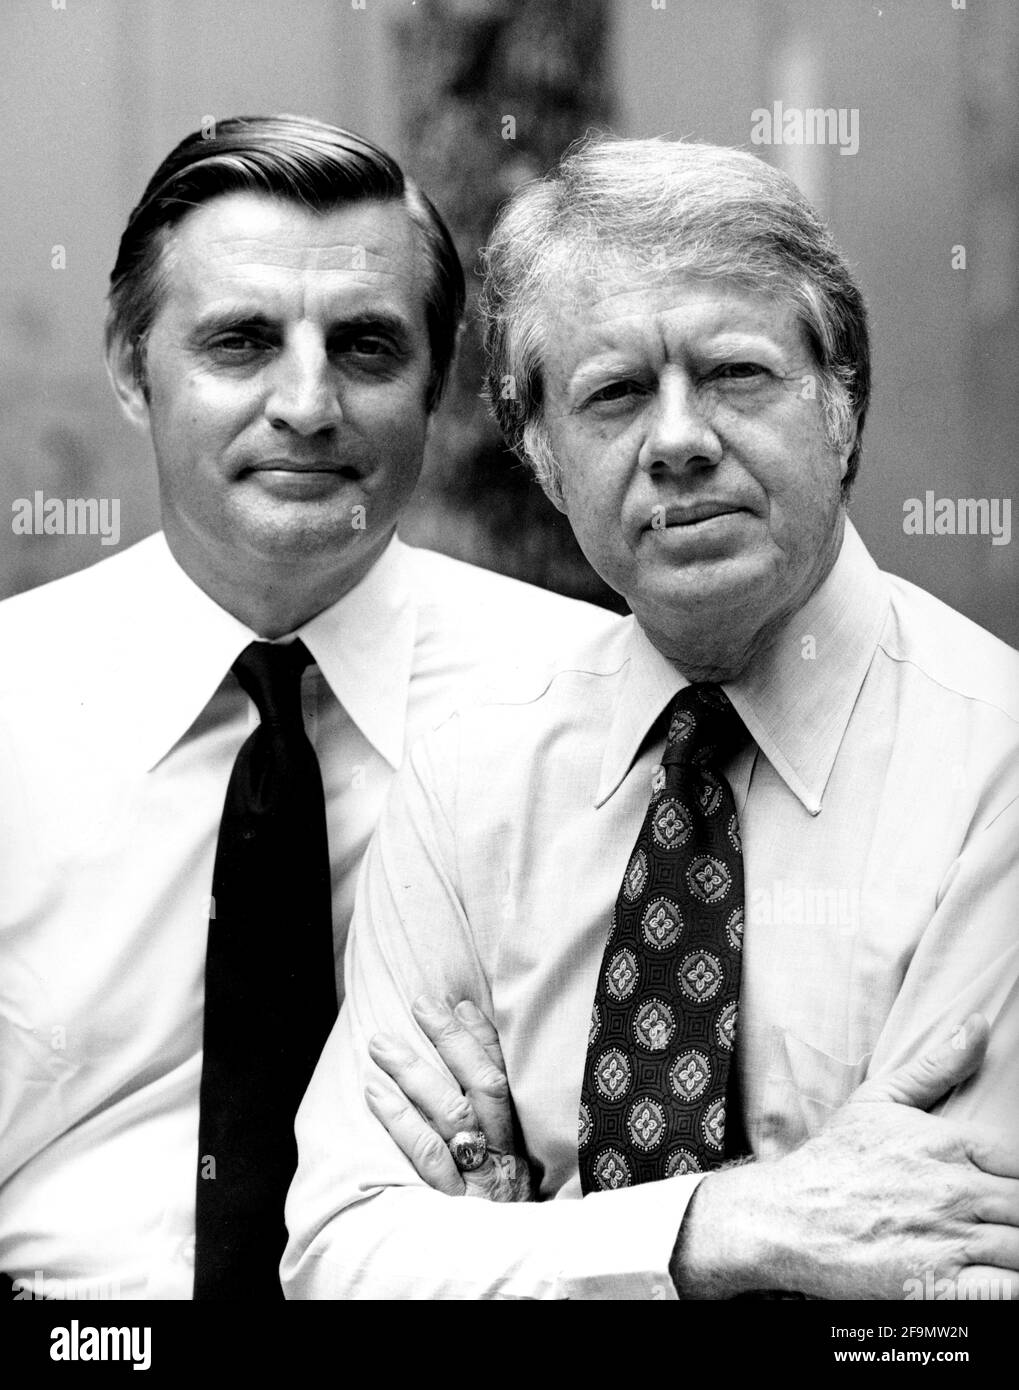 Luglio 1976 - JIMMY CARTER e WALTER MONDALE. Data esatta e luogo sconosciuto. (Immagine di credito: © Globe Photos/ZUMA Wire) Foto Stock